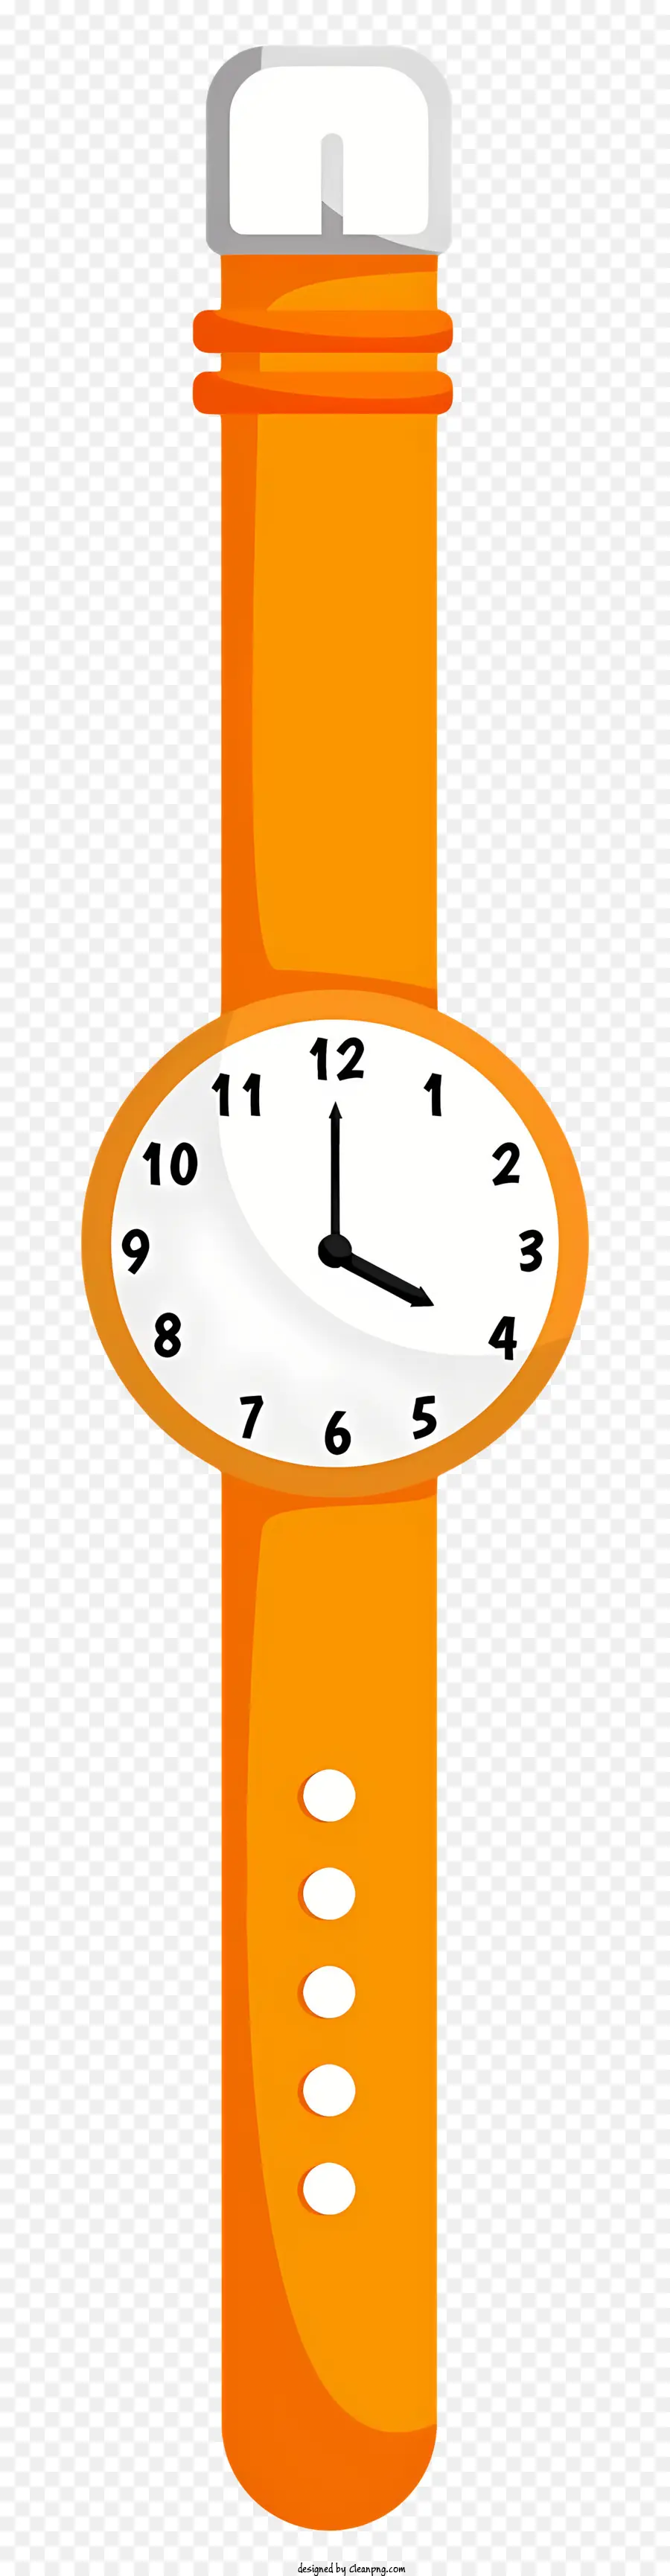 đồng hồ thuốc cam chai thời gian dễ đọc nền đen - Đồng hồ chai thuốc màu cam trên nền đen